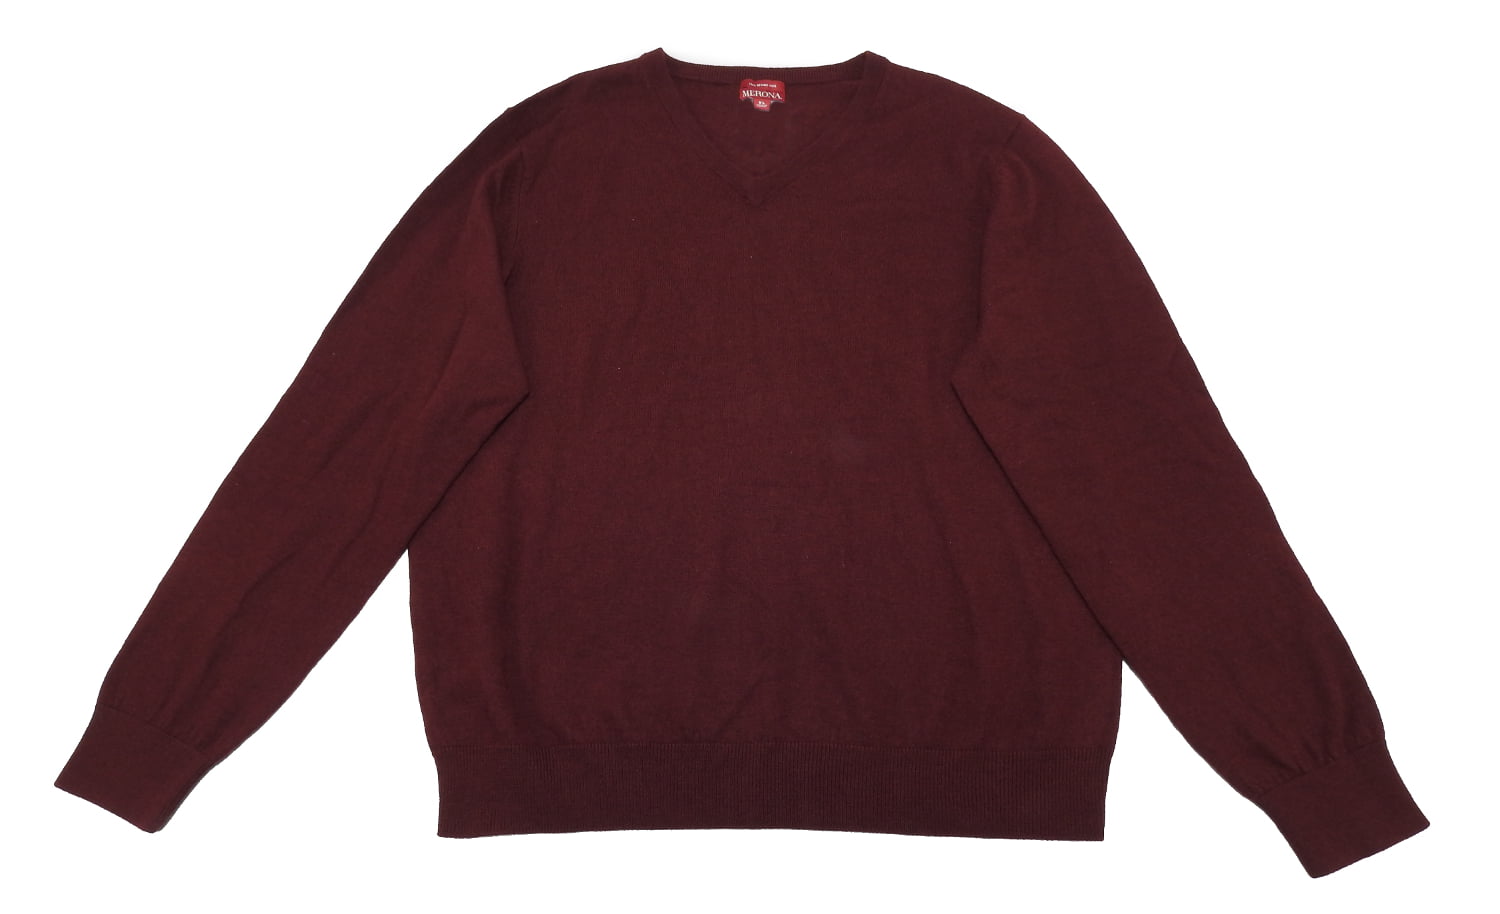 hand knitted Wine-red and dark purple sweater merino wool sweater mens swater